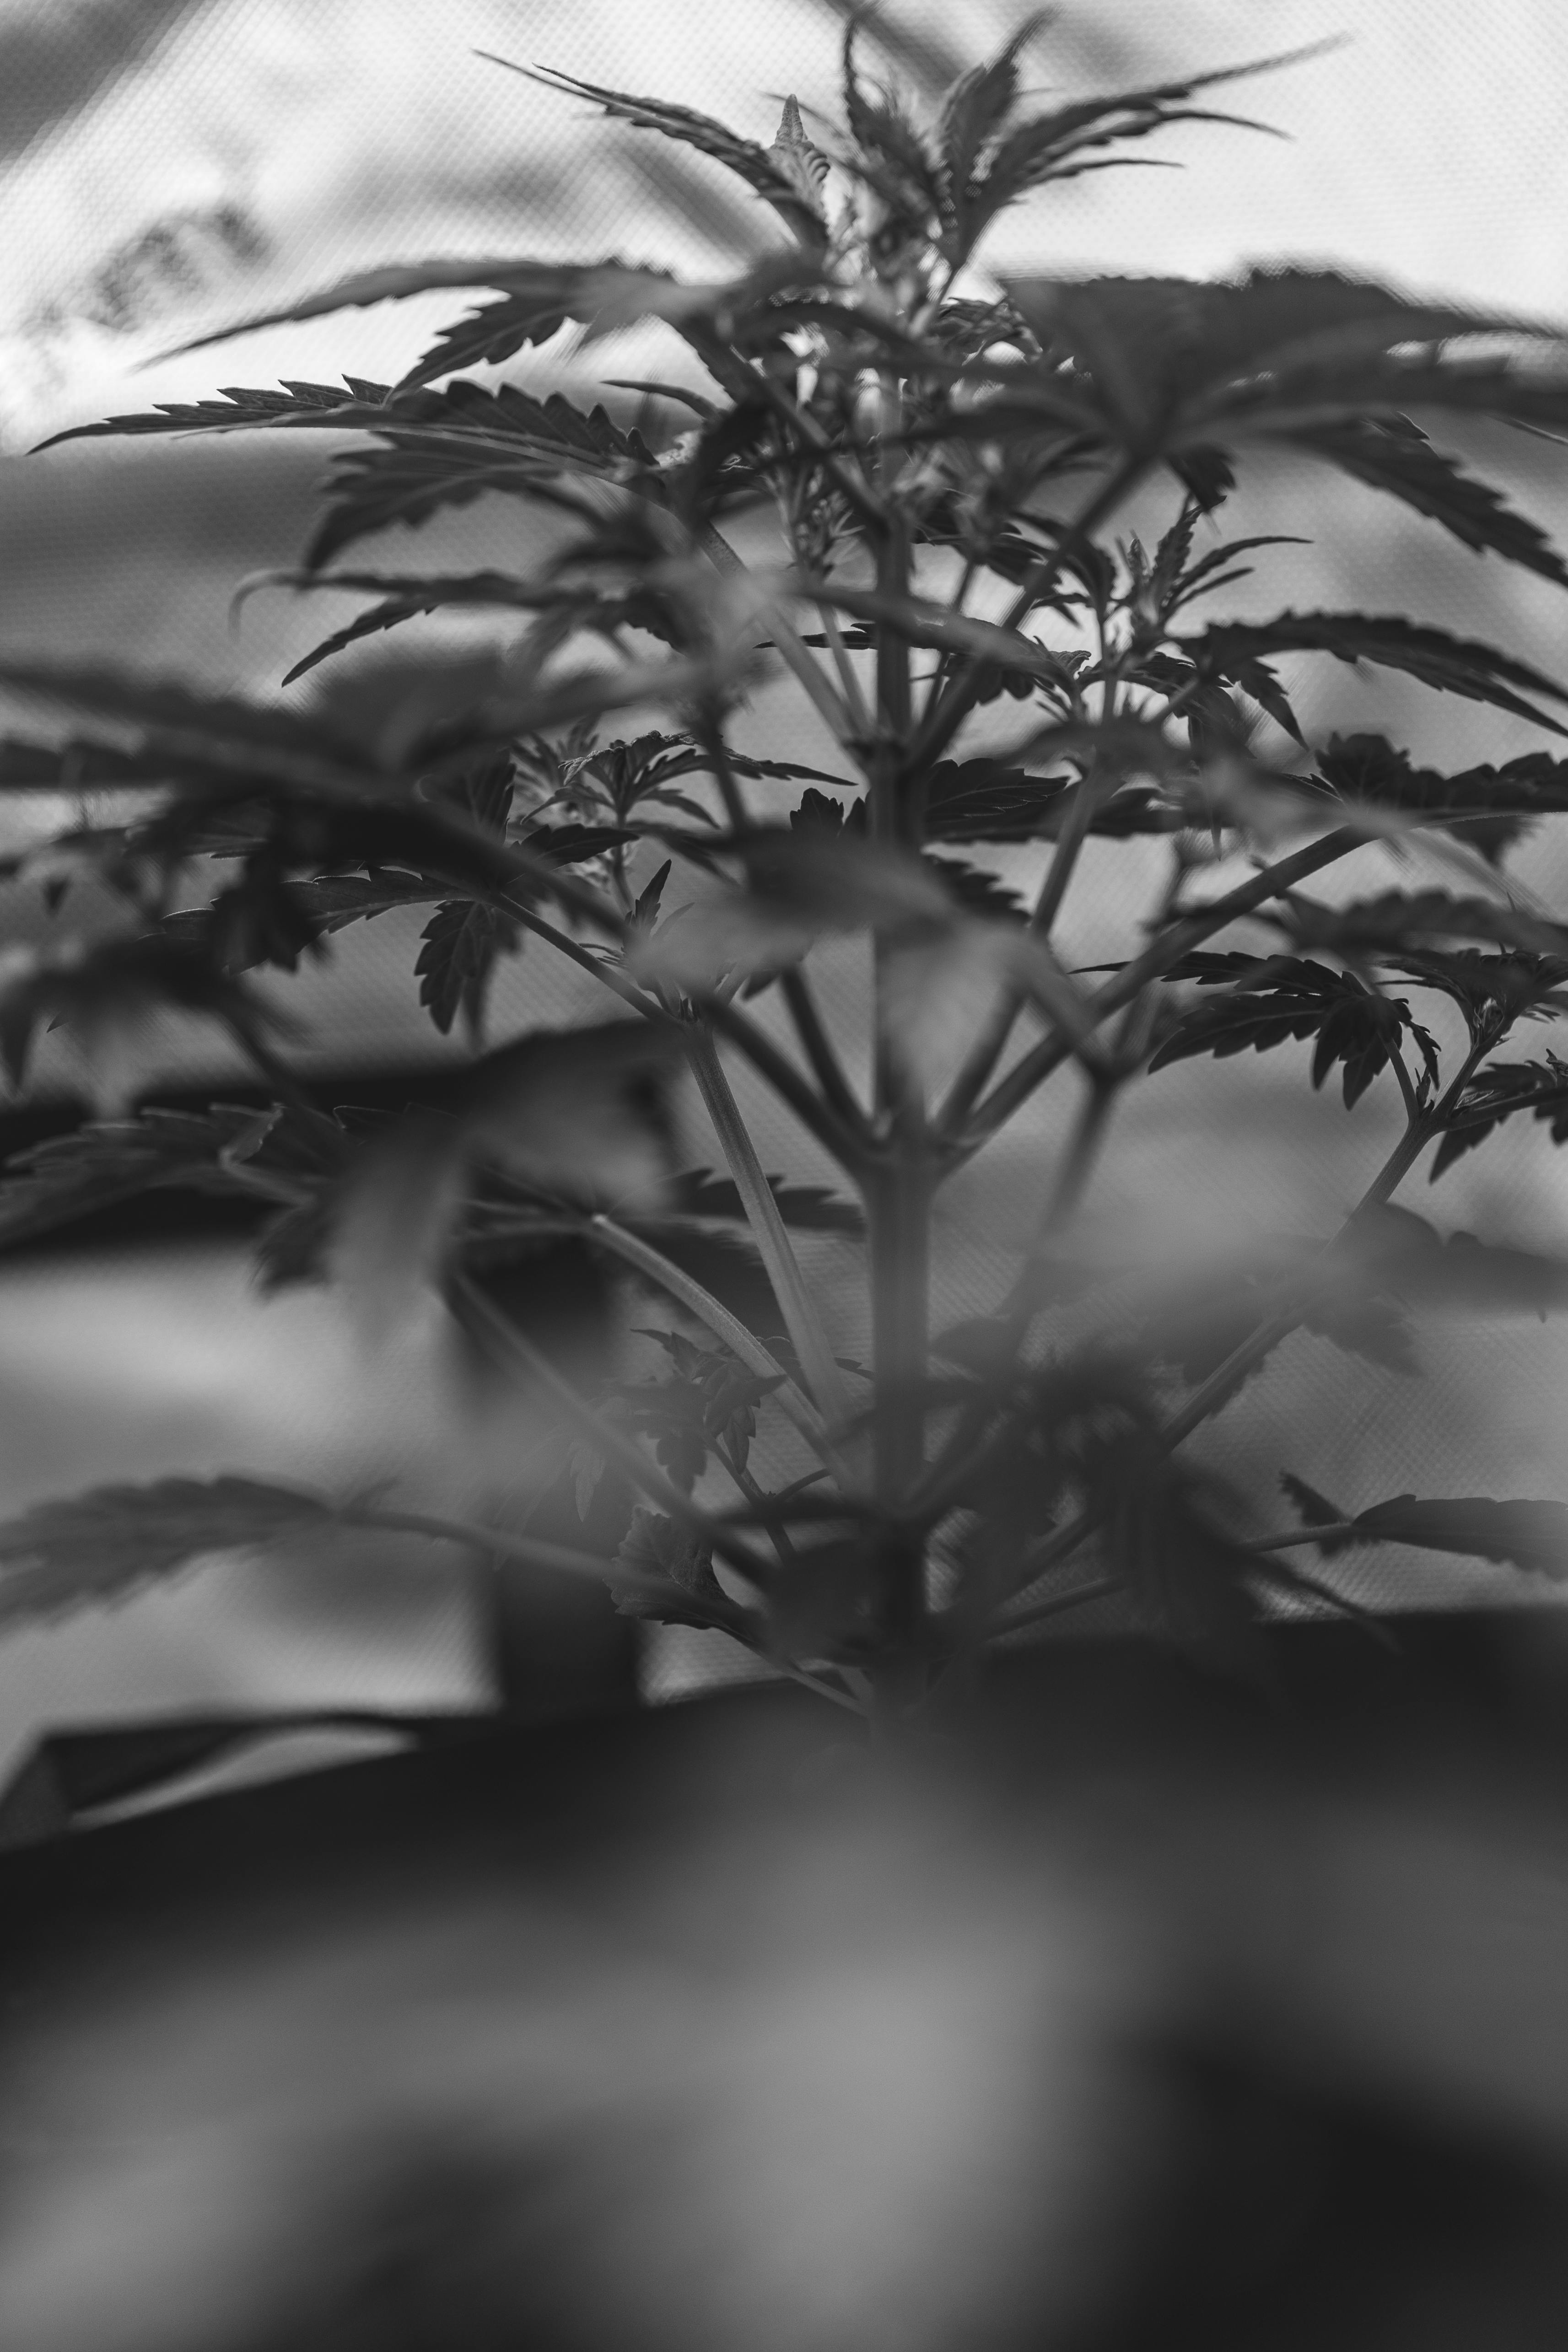 Kostenloses Foto zum Thema: blätter, cannabis, einfarbig,  graustufenfotografie, marihuana, pflanze, schwarz und weiß, selektiven fokus